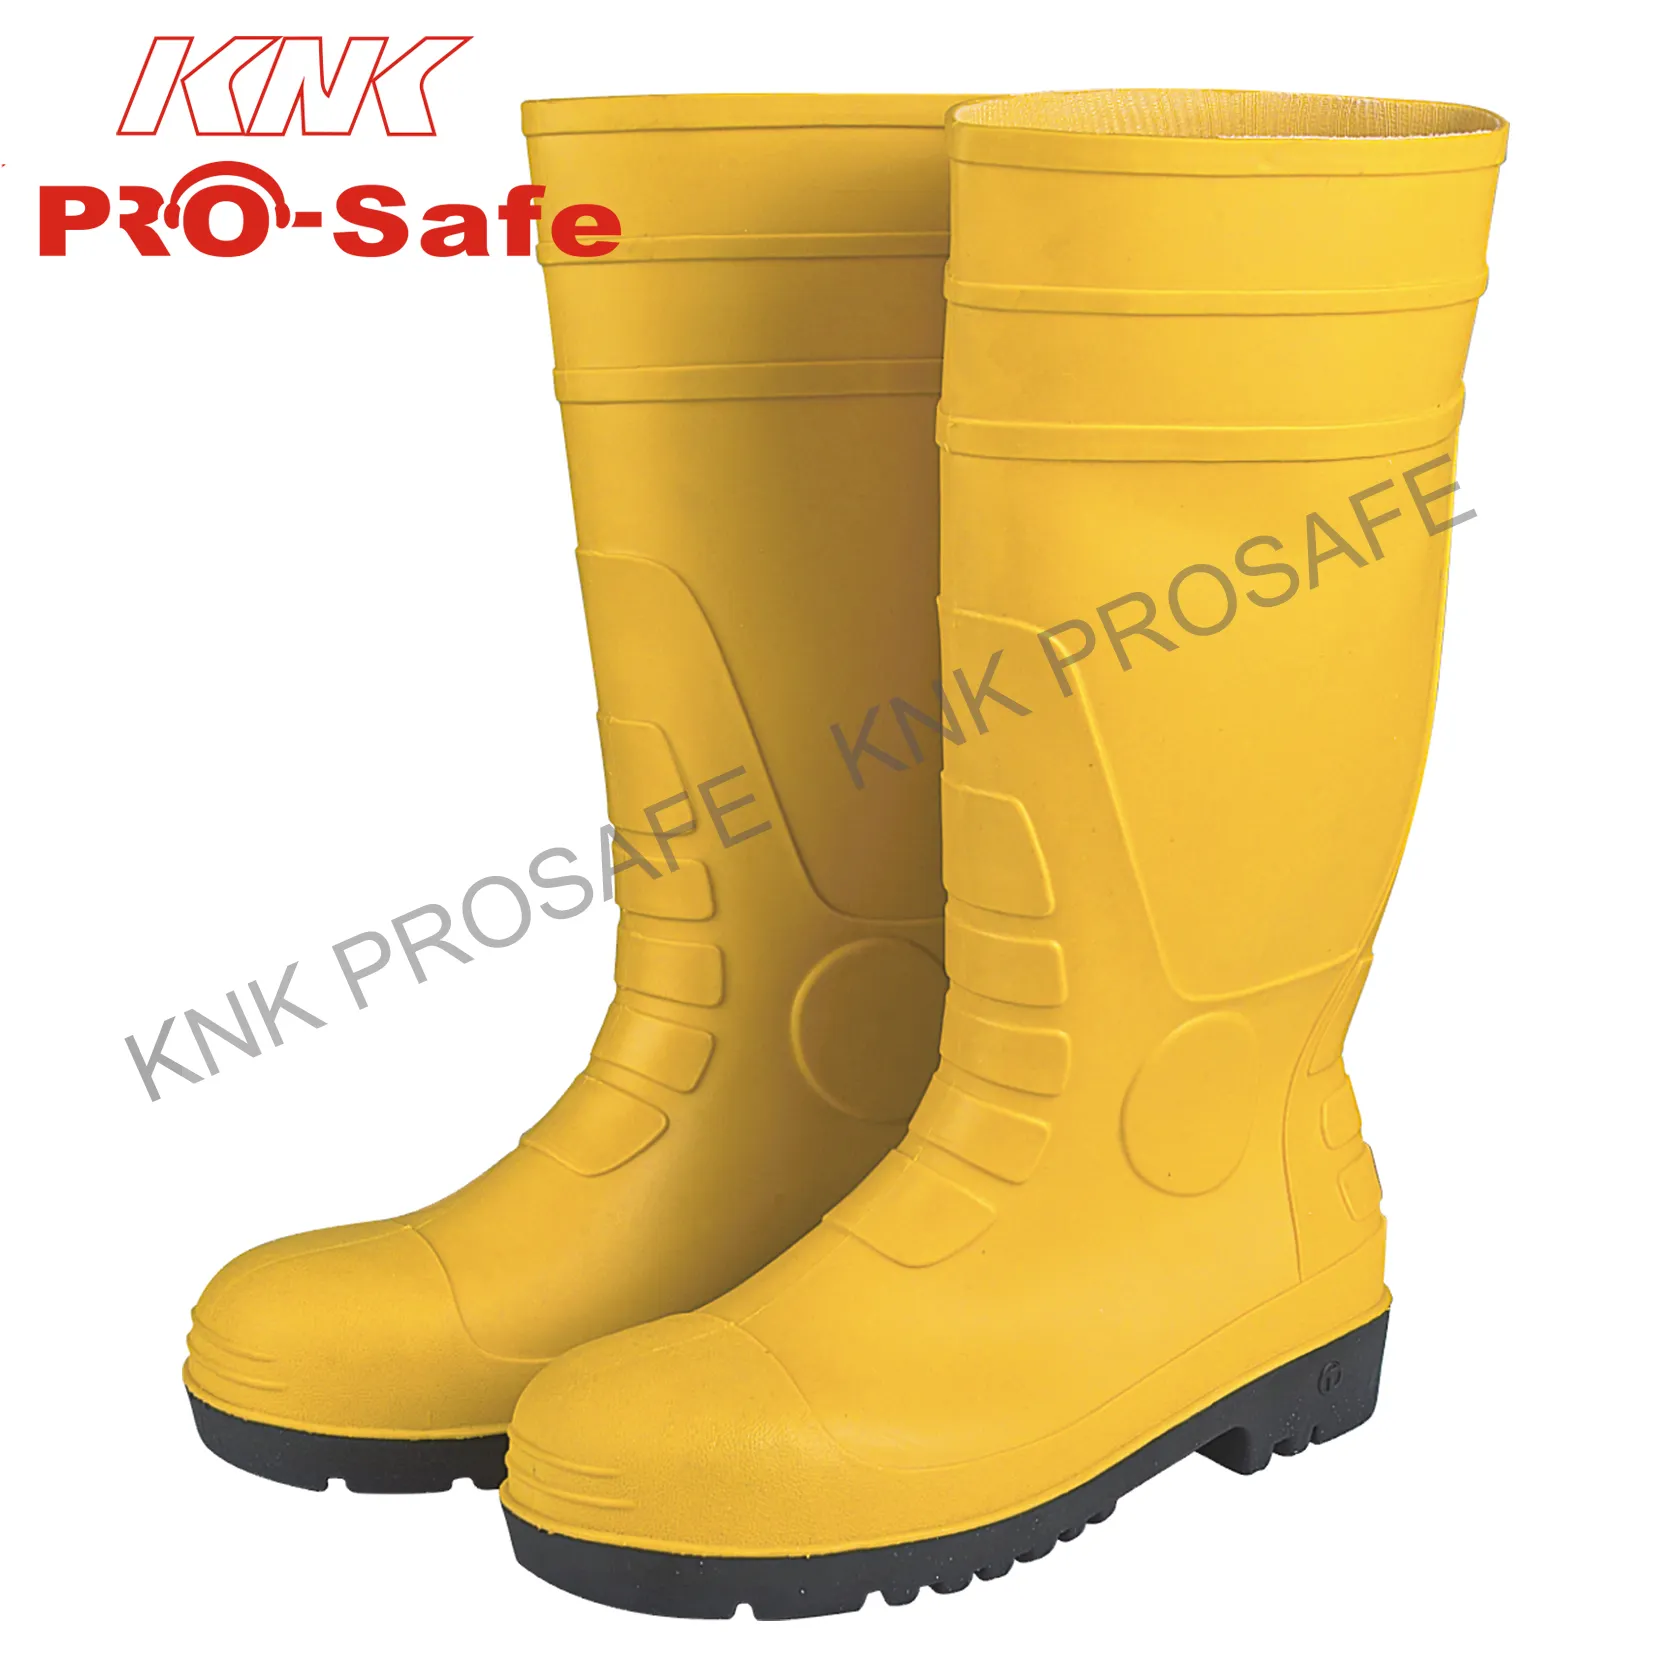 Сапоги для дождя UKCA, ПВХ защитные сапоги, сапоги, средняя подошва, сталь, стандарт CE